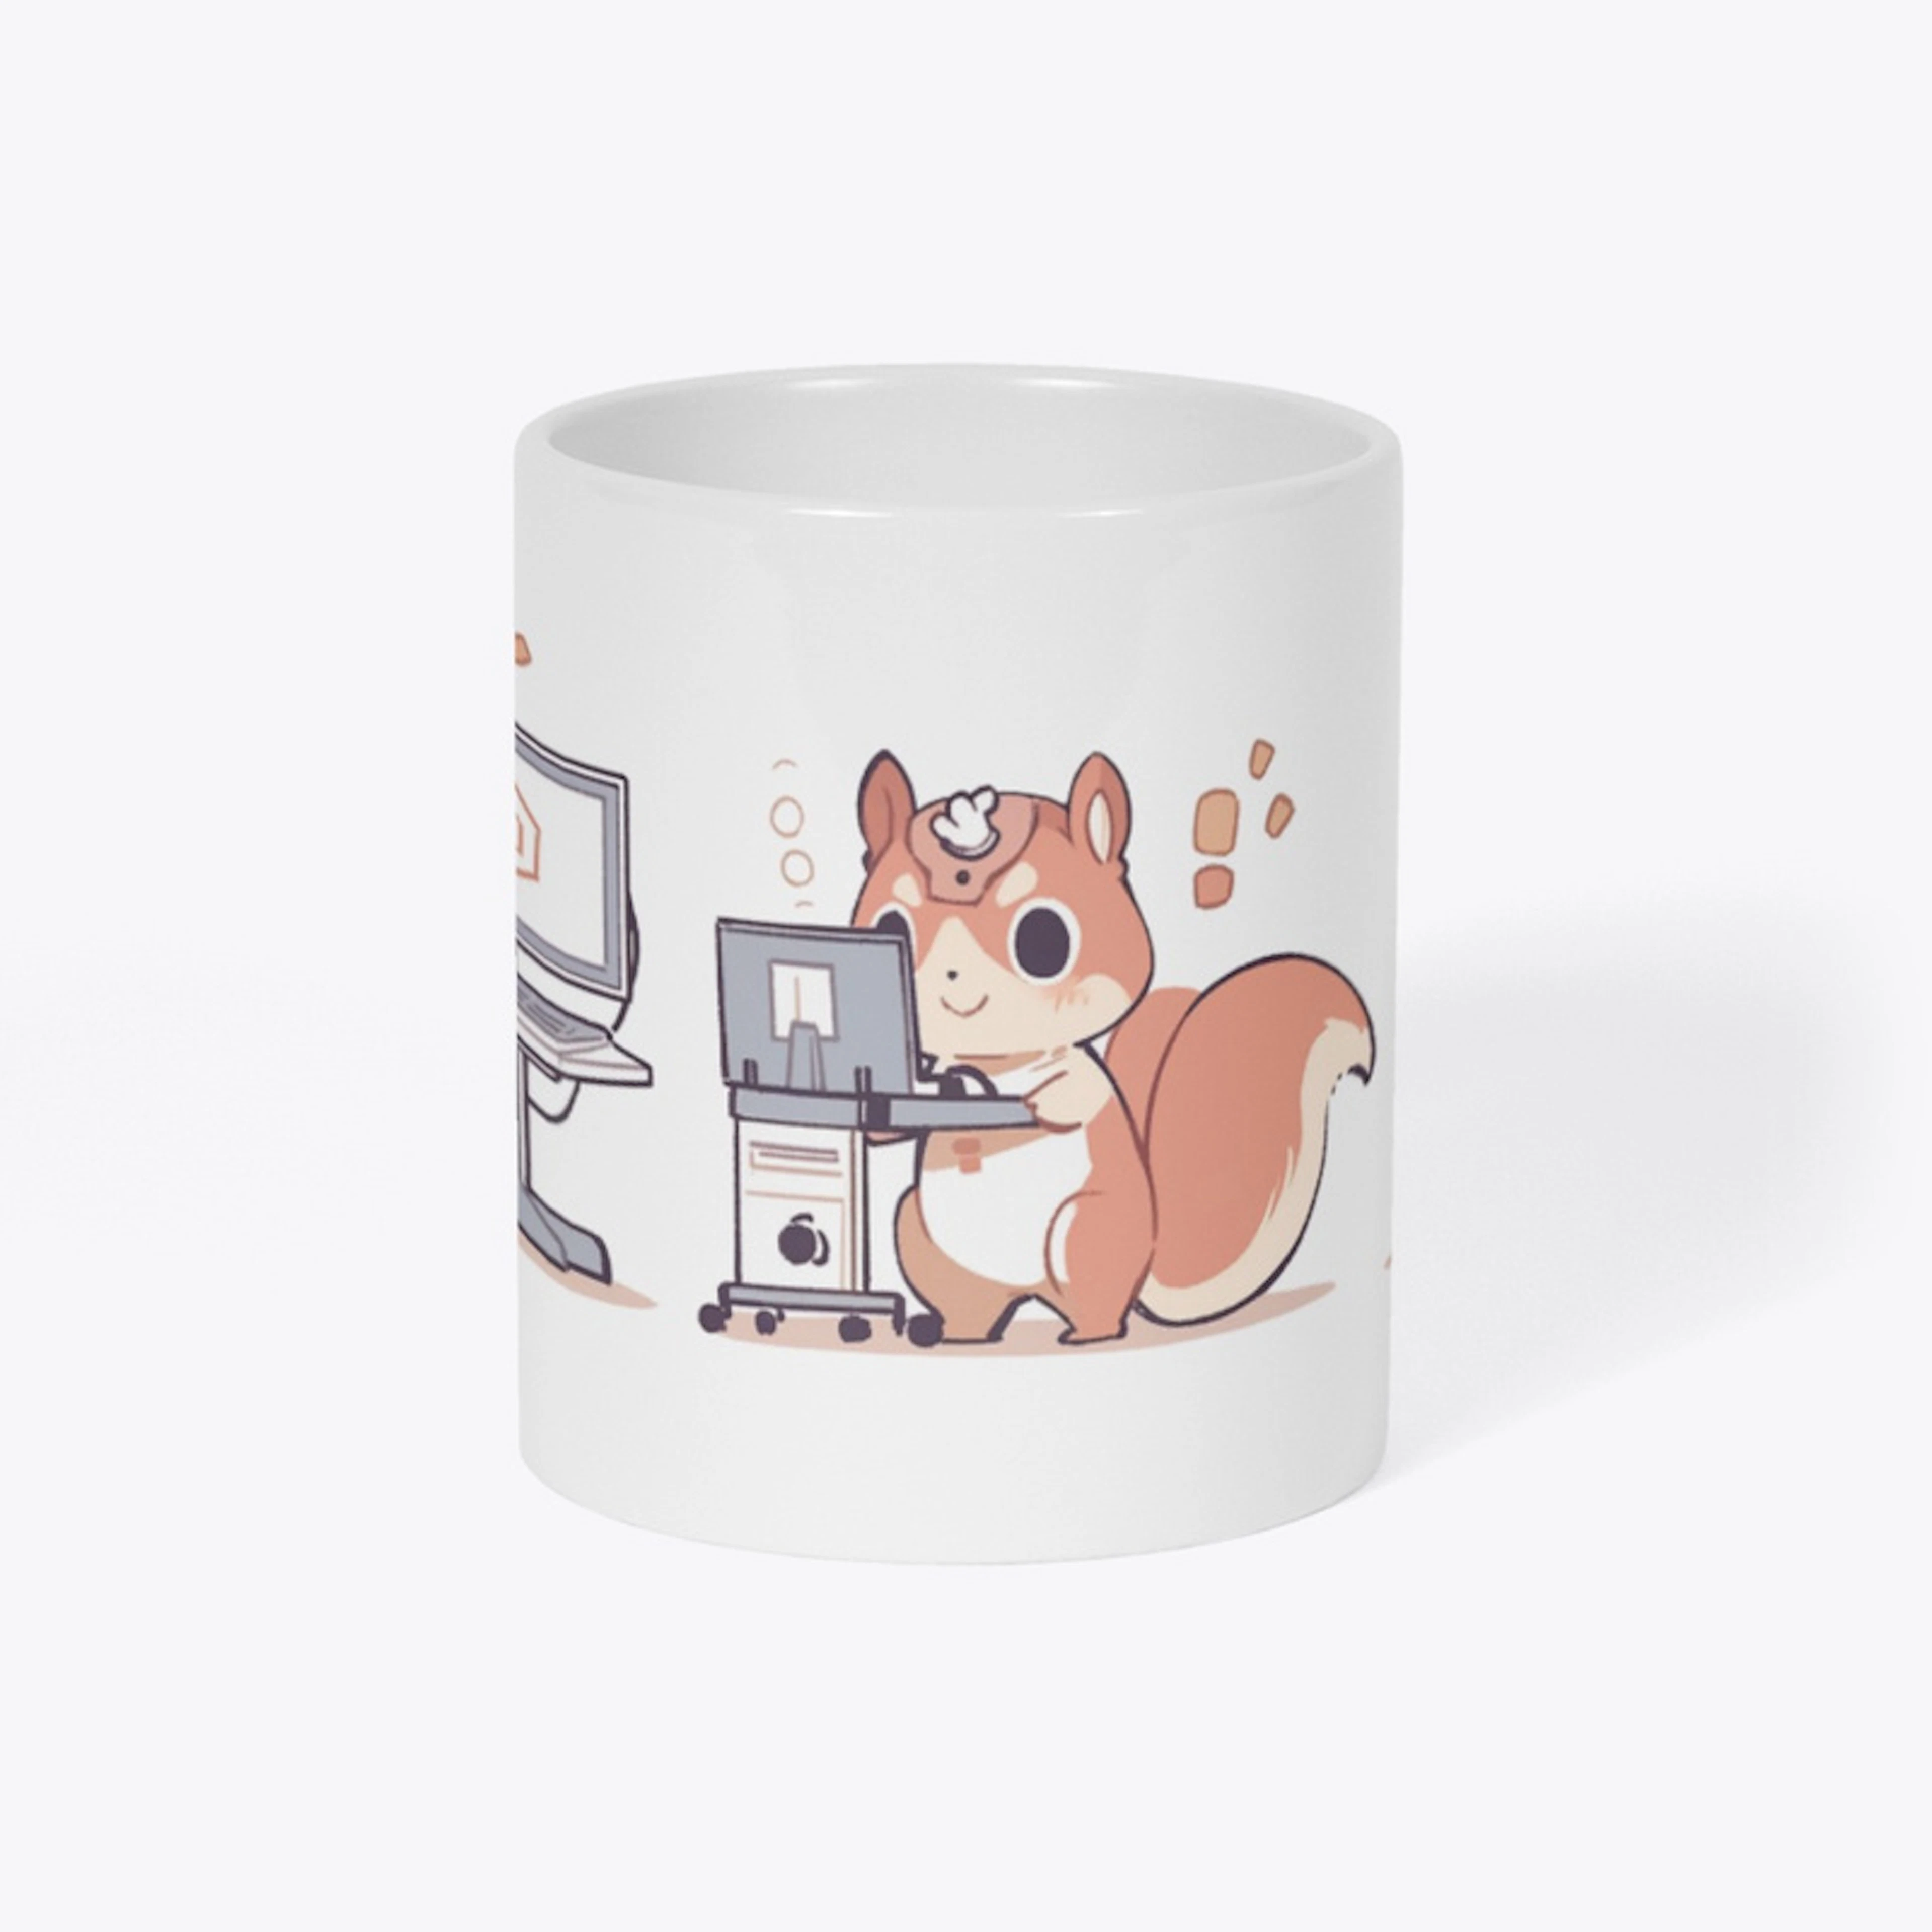 Squirrel Tech Mug - A Nuts Sip!